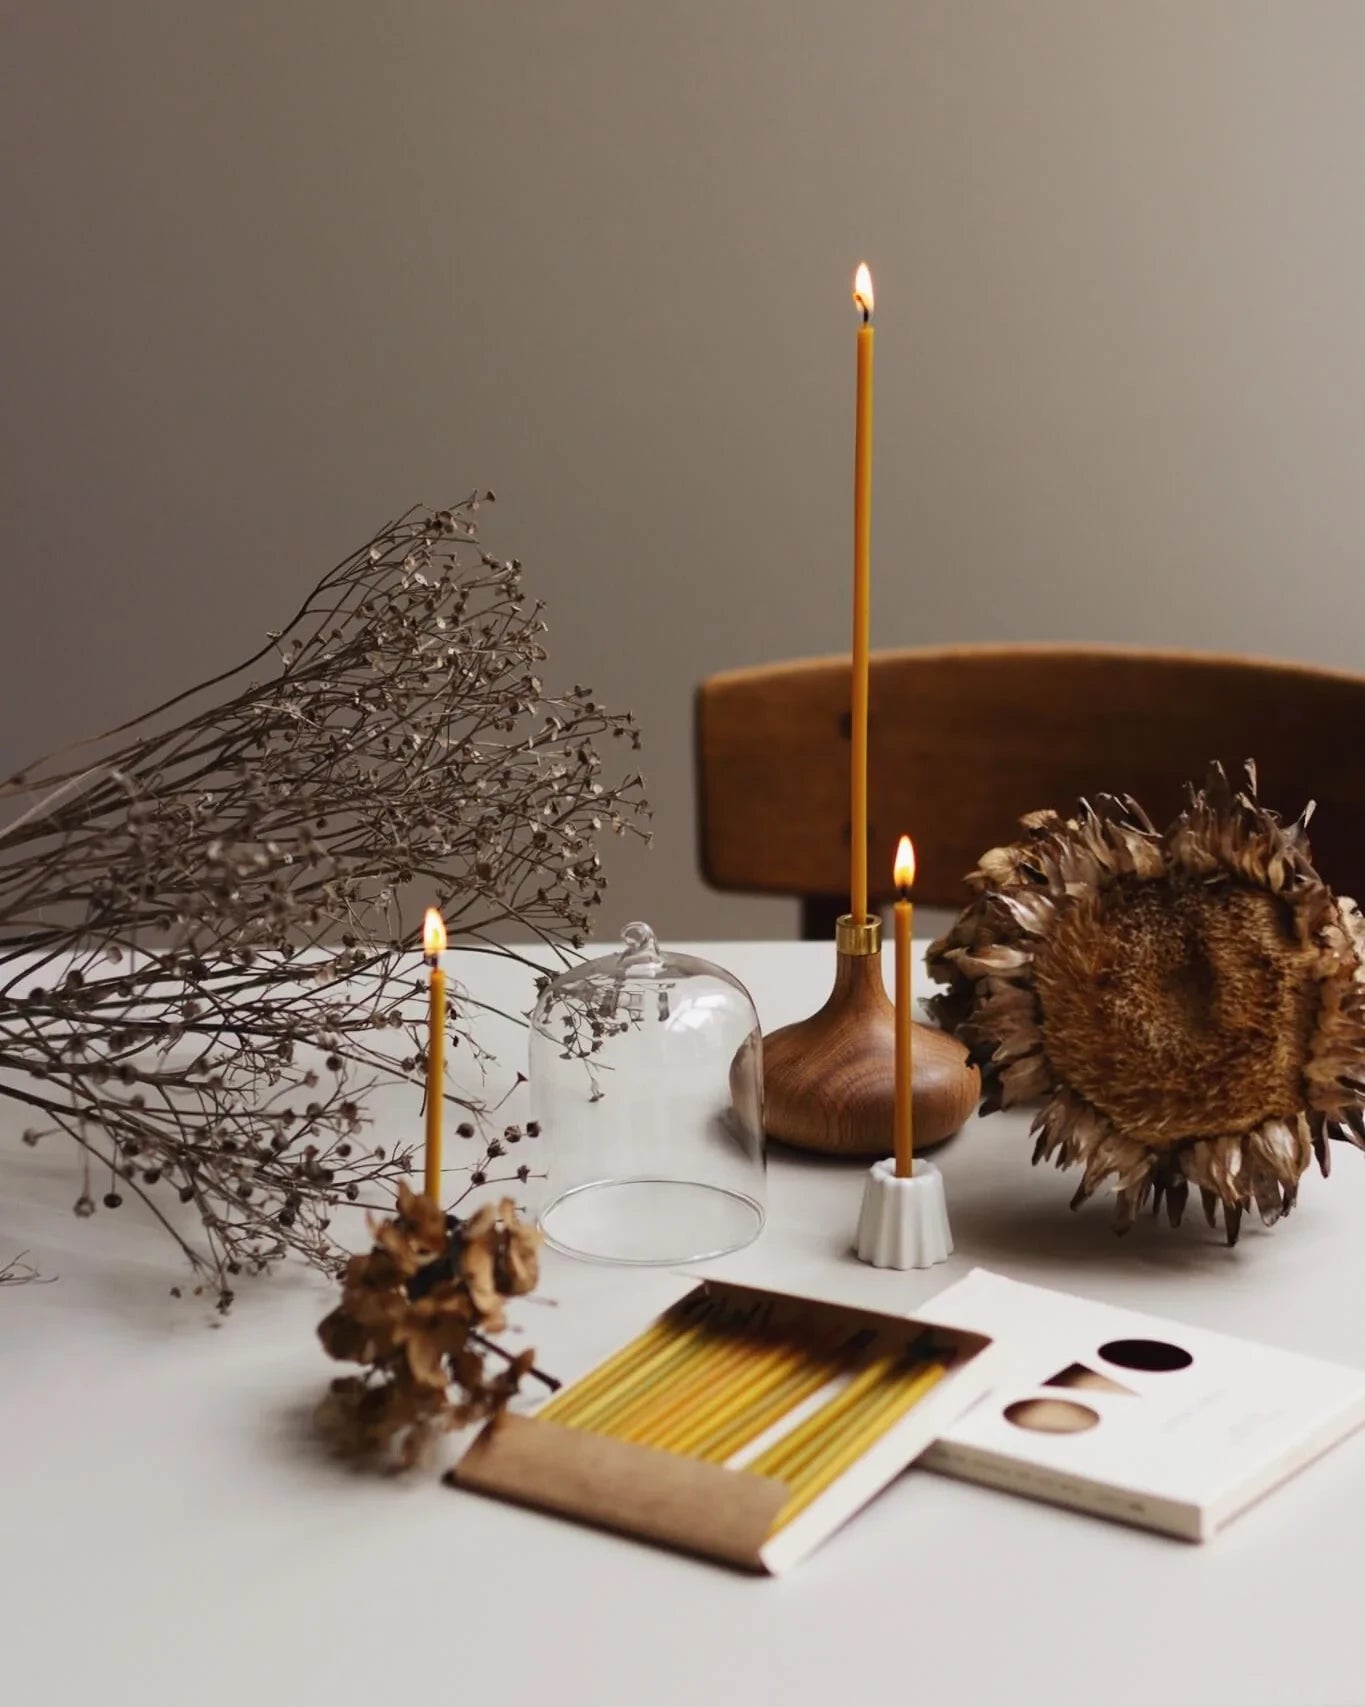 Olika handgjorda ljusstakar i naturmaterial står på ett bord med bivax ljus. 